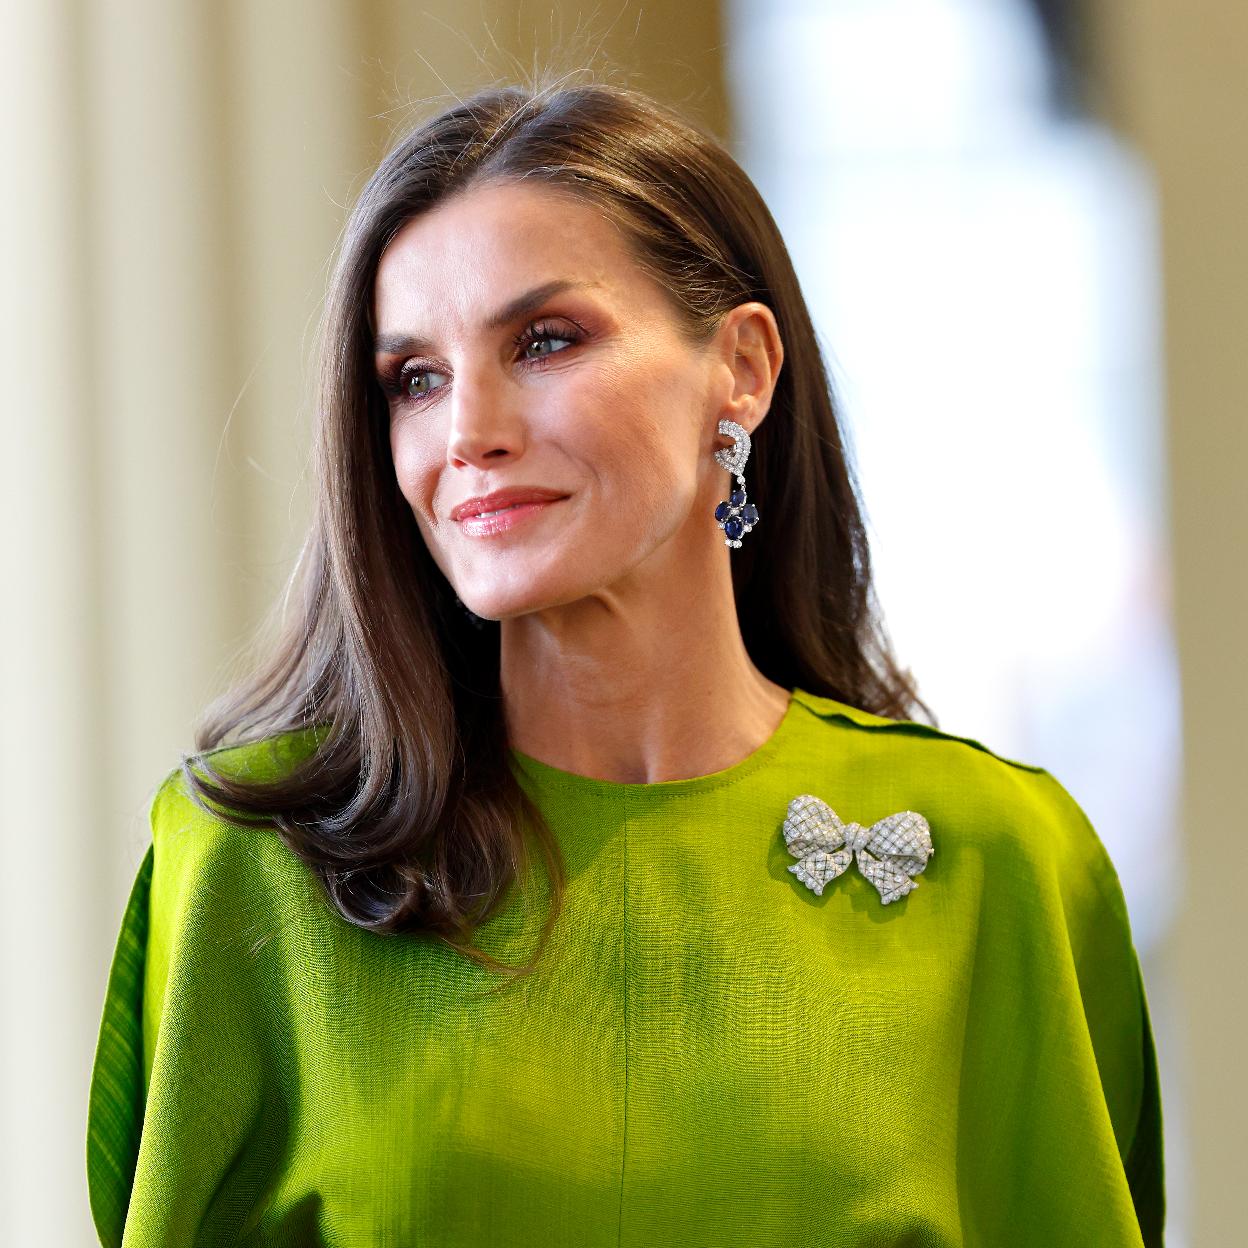 La reina acudirá a la boda de Victoria López-Quesada, ahijada del rey Felipe VI. /Getty images